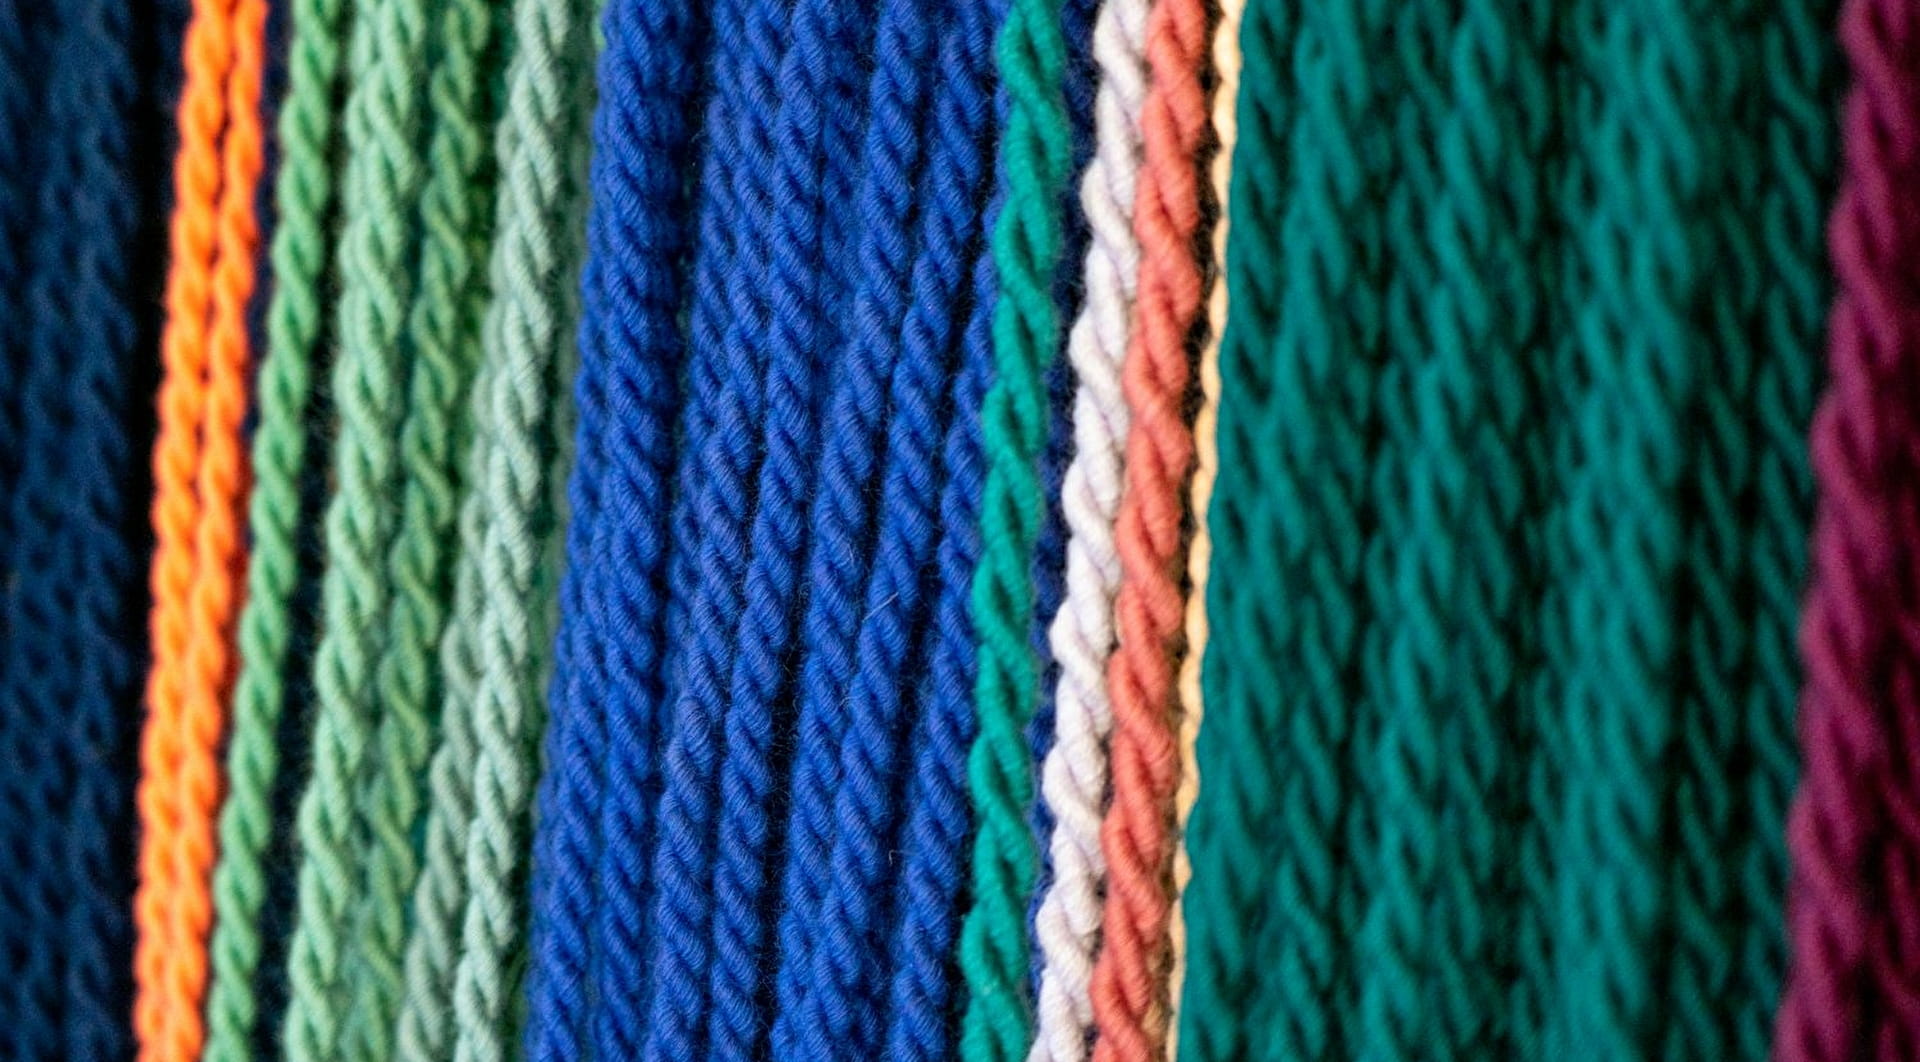 Hilos de lana de todos los colores